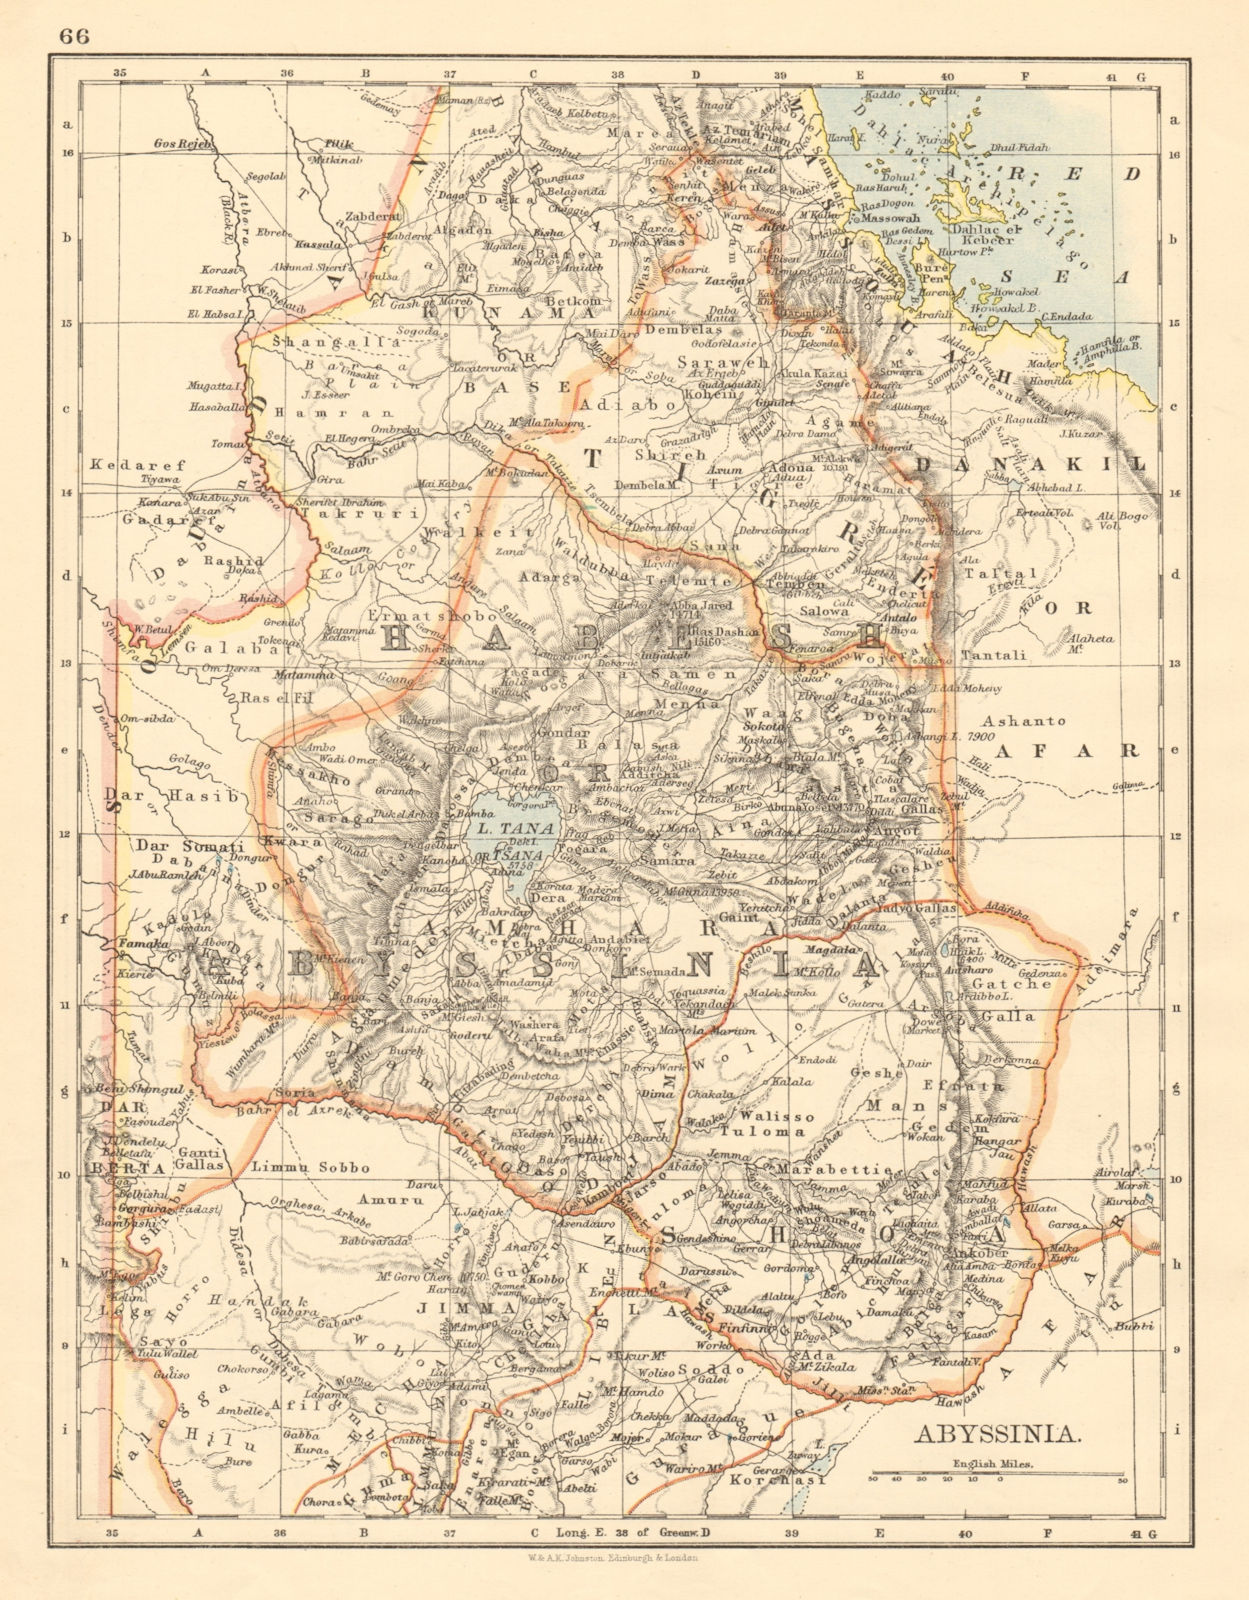 HABESH or ABYSSINIA Tigre Amhara Shoa Godjam Ethiopia JOHNSTON 1892 old map